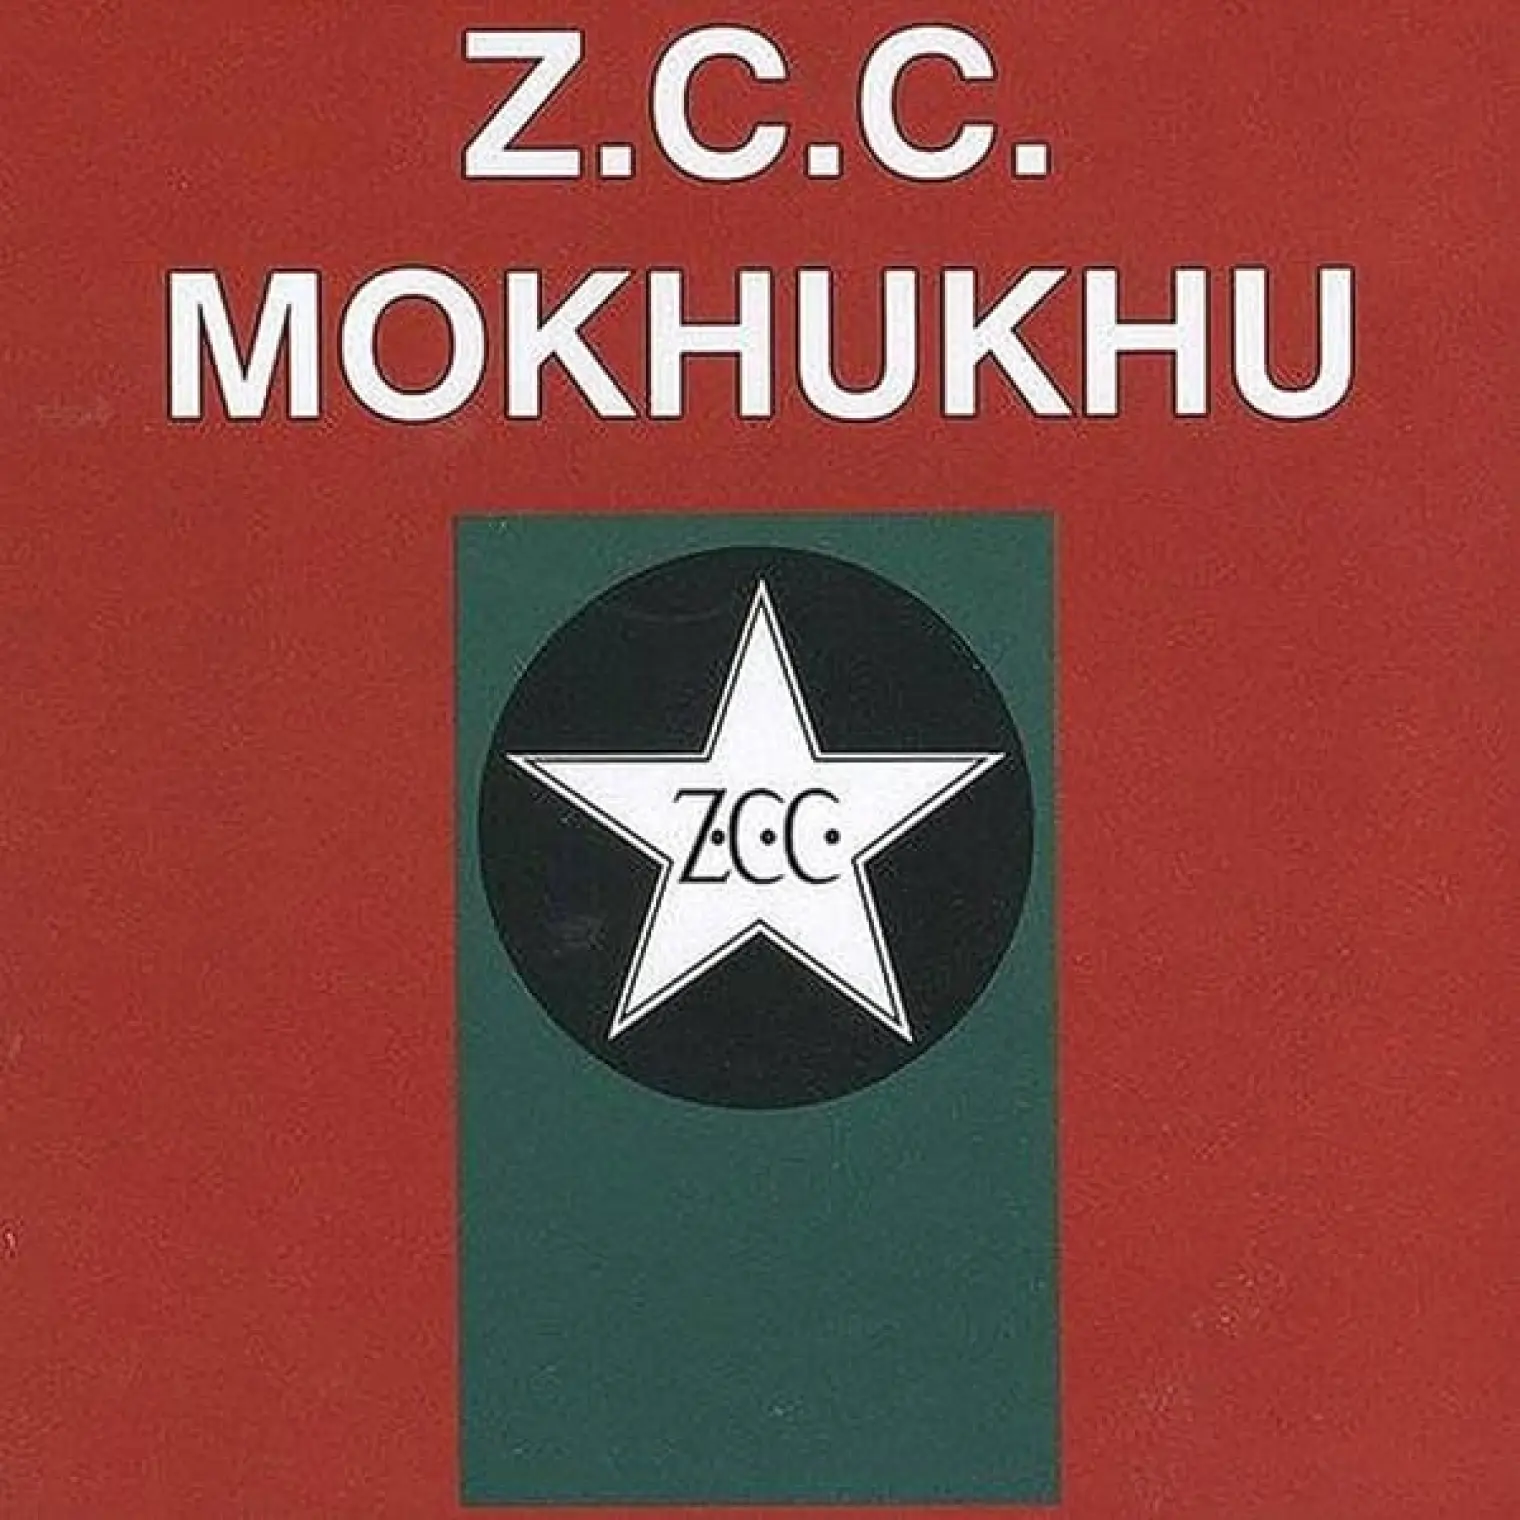 Mokhukhu Vol 2 -  Z.C.C. Mokhukhu 